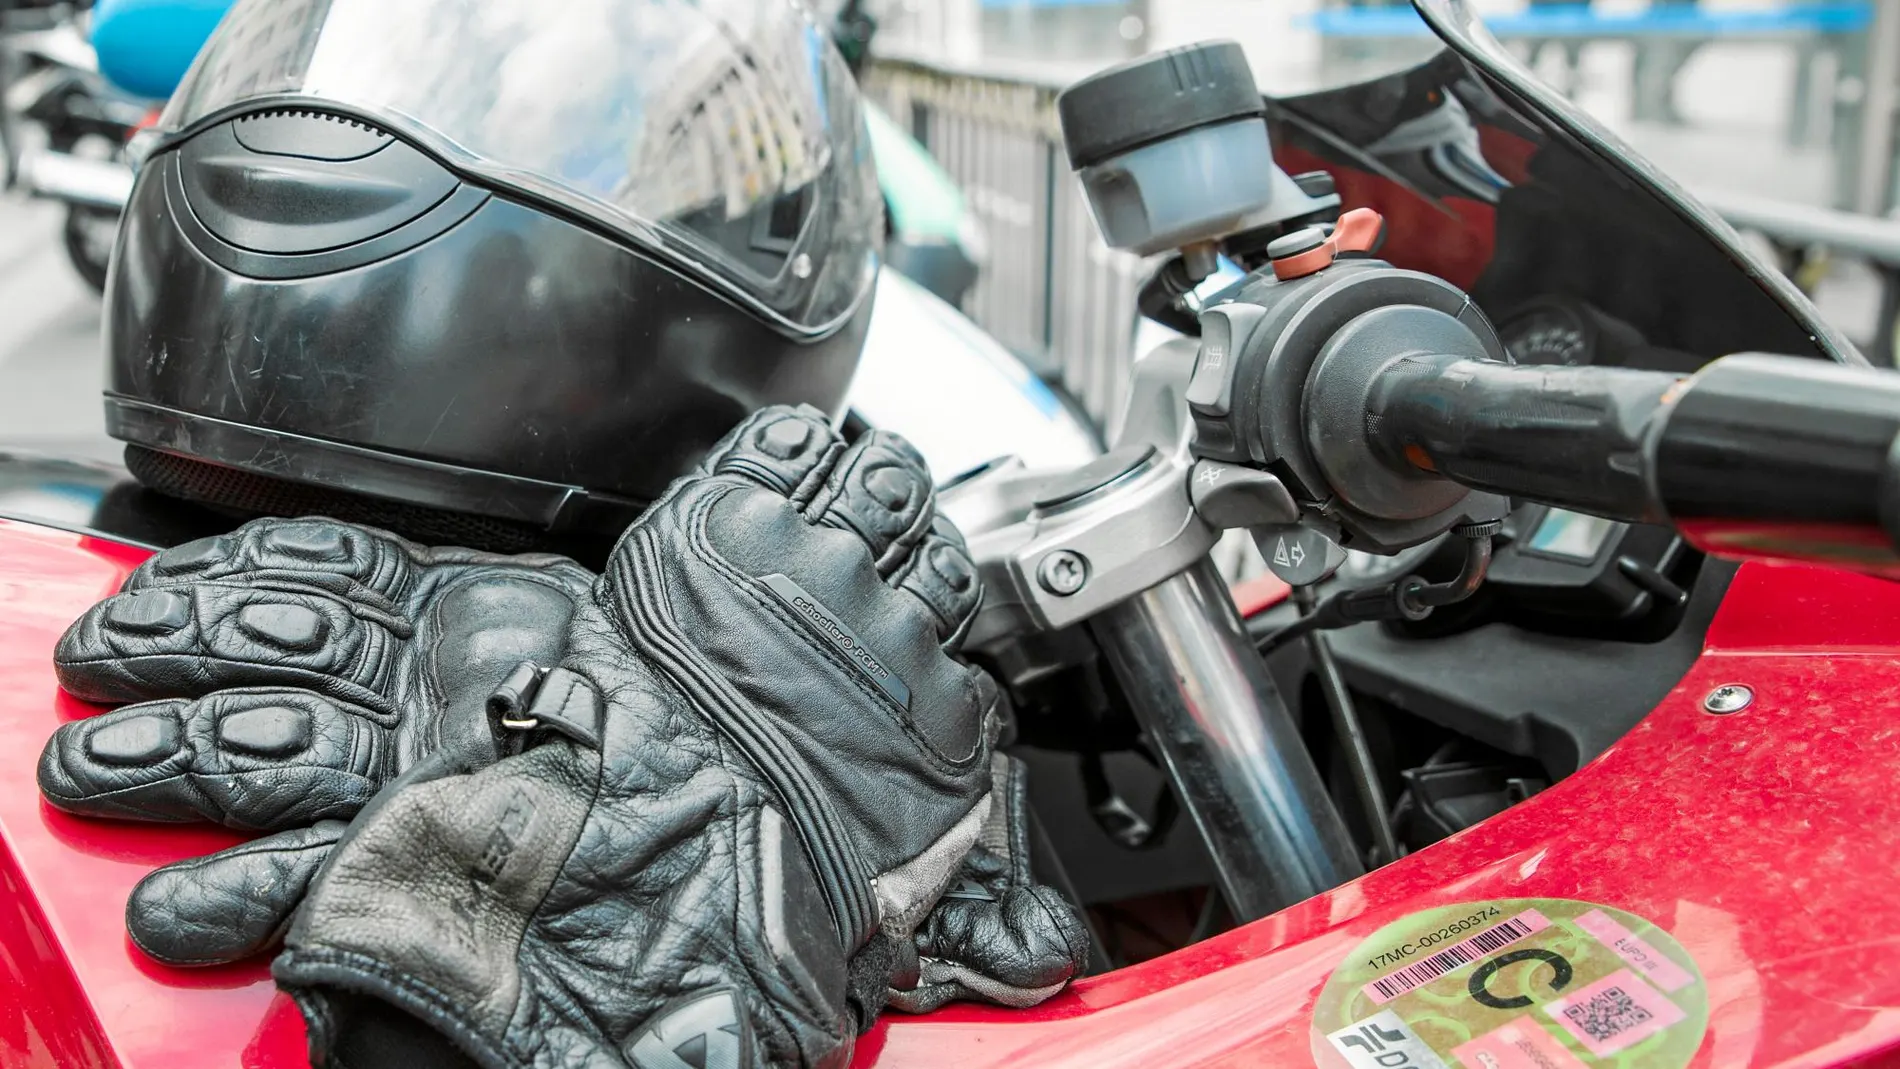 Las motocicletas también tienen que llevar el distintivo ambiental en un lugar visible / Foto: David Jar